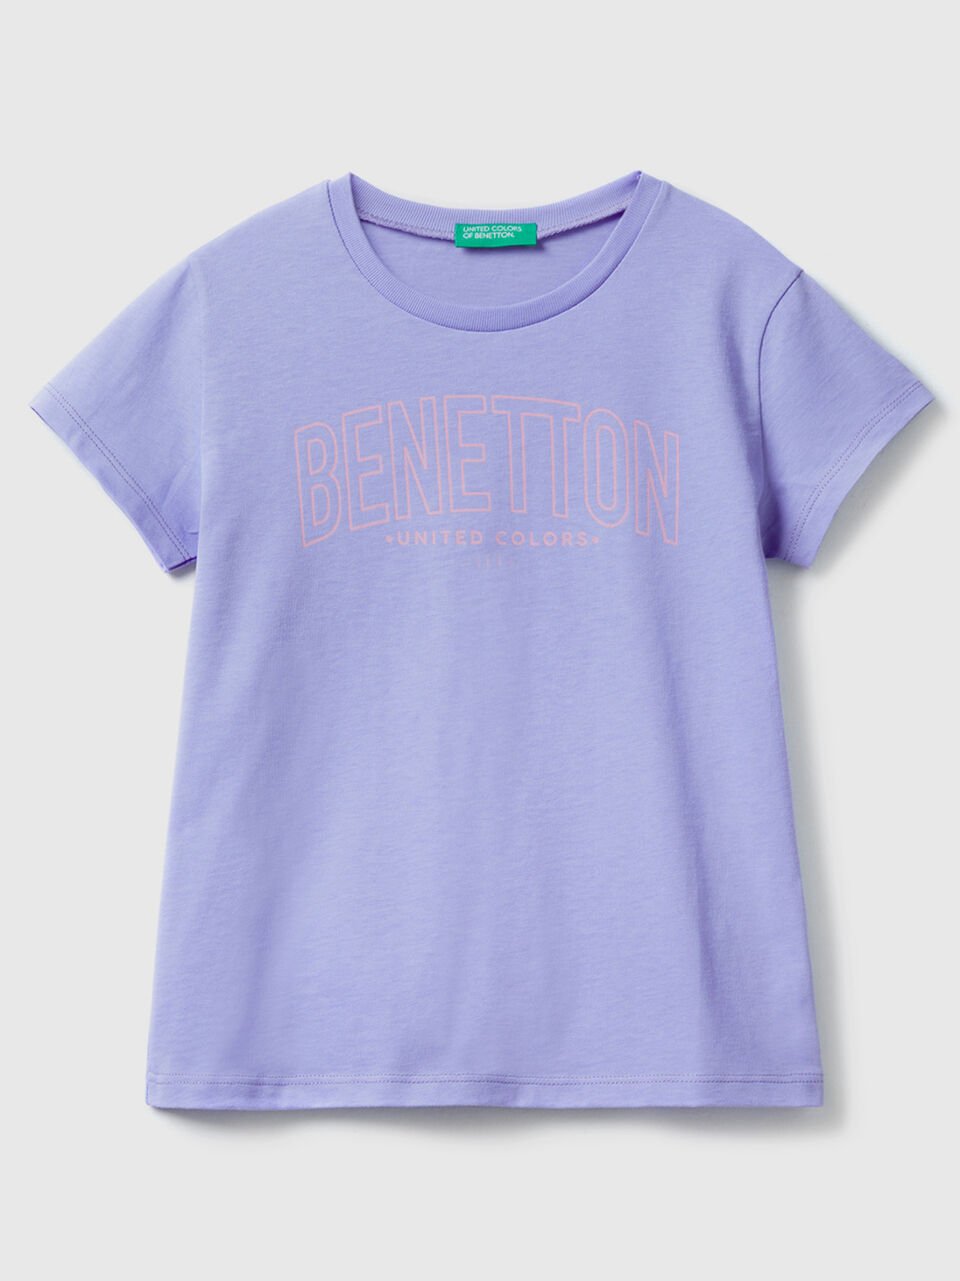 (image for) A Prezzi Outlet Maglietta con logo 100% cotone benetton online